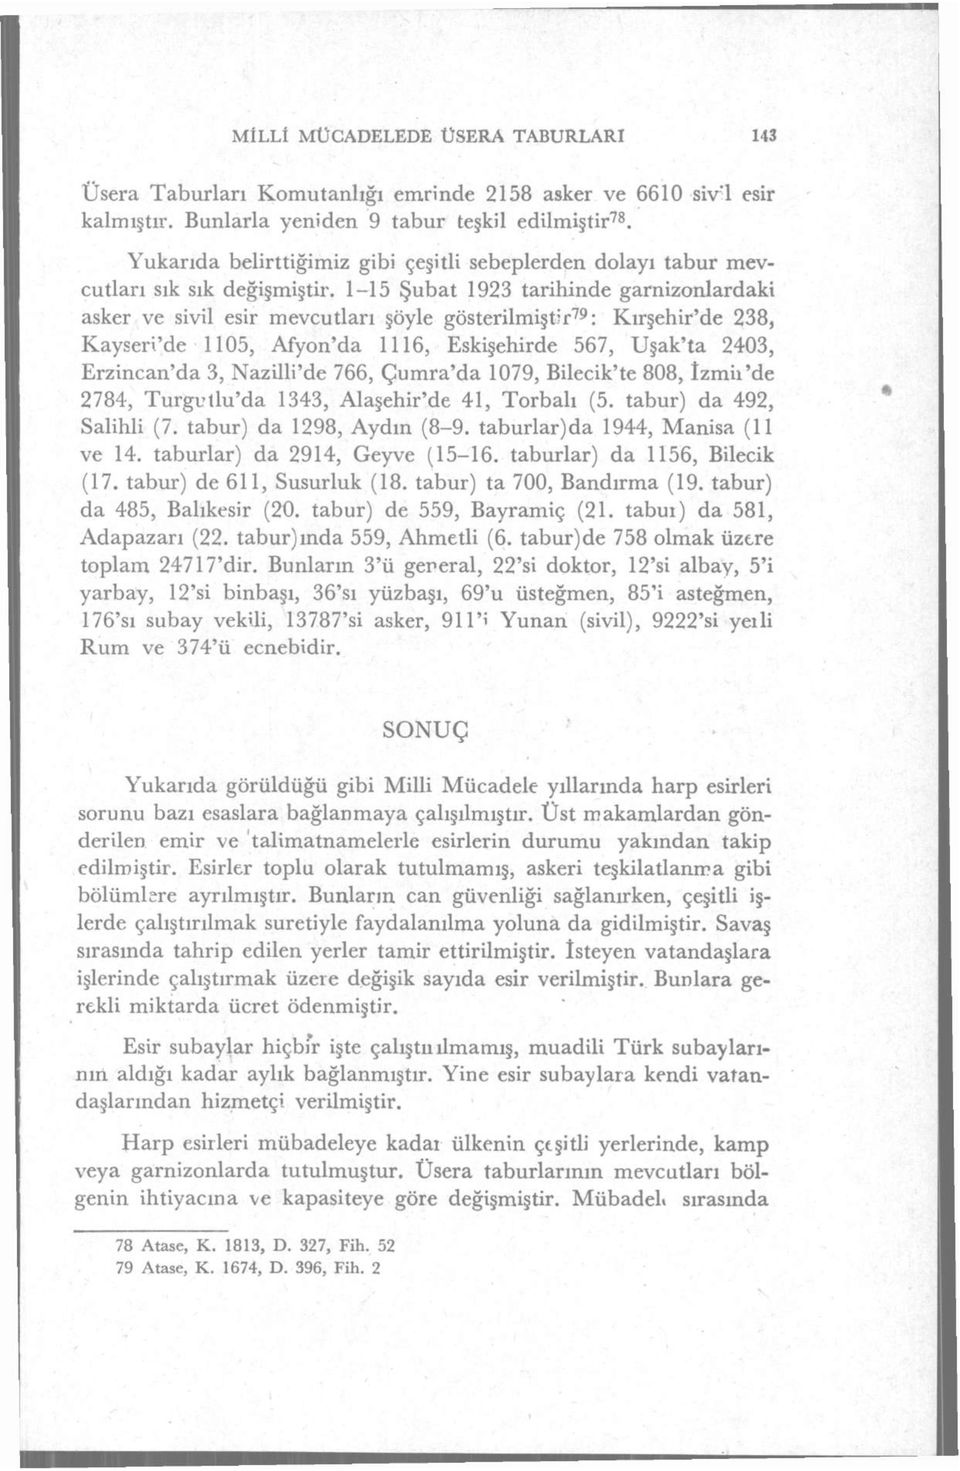 1-15 Şubat 1923 tarihinde garnizonlardaki asker ve sivil esir mevcutları şöyle gösterilmiştir 79 : Kırşehir'de 238, Kayseri'de 1105, Afyon'da 1116, Eskişehirde 567, Uşak'ta 2403, Erzincan'da 3,